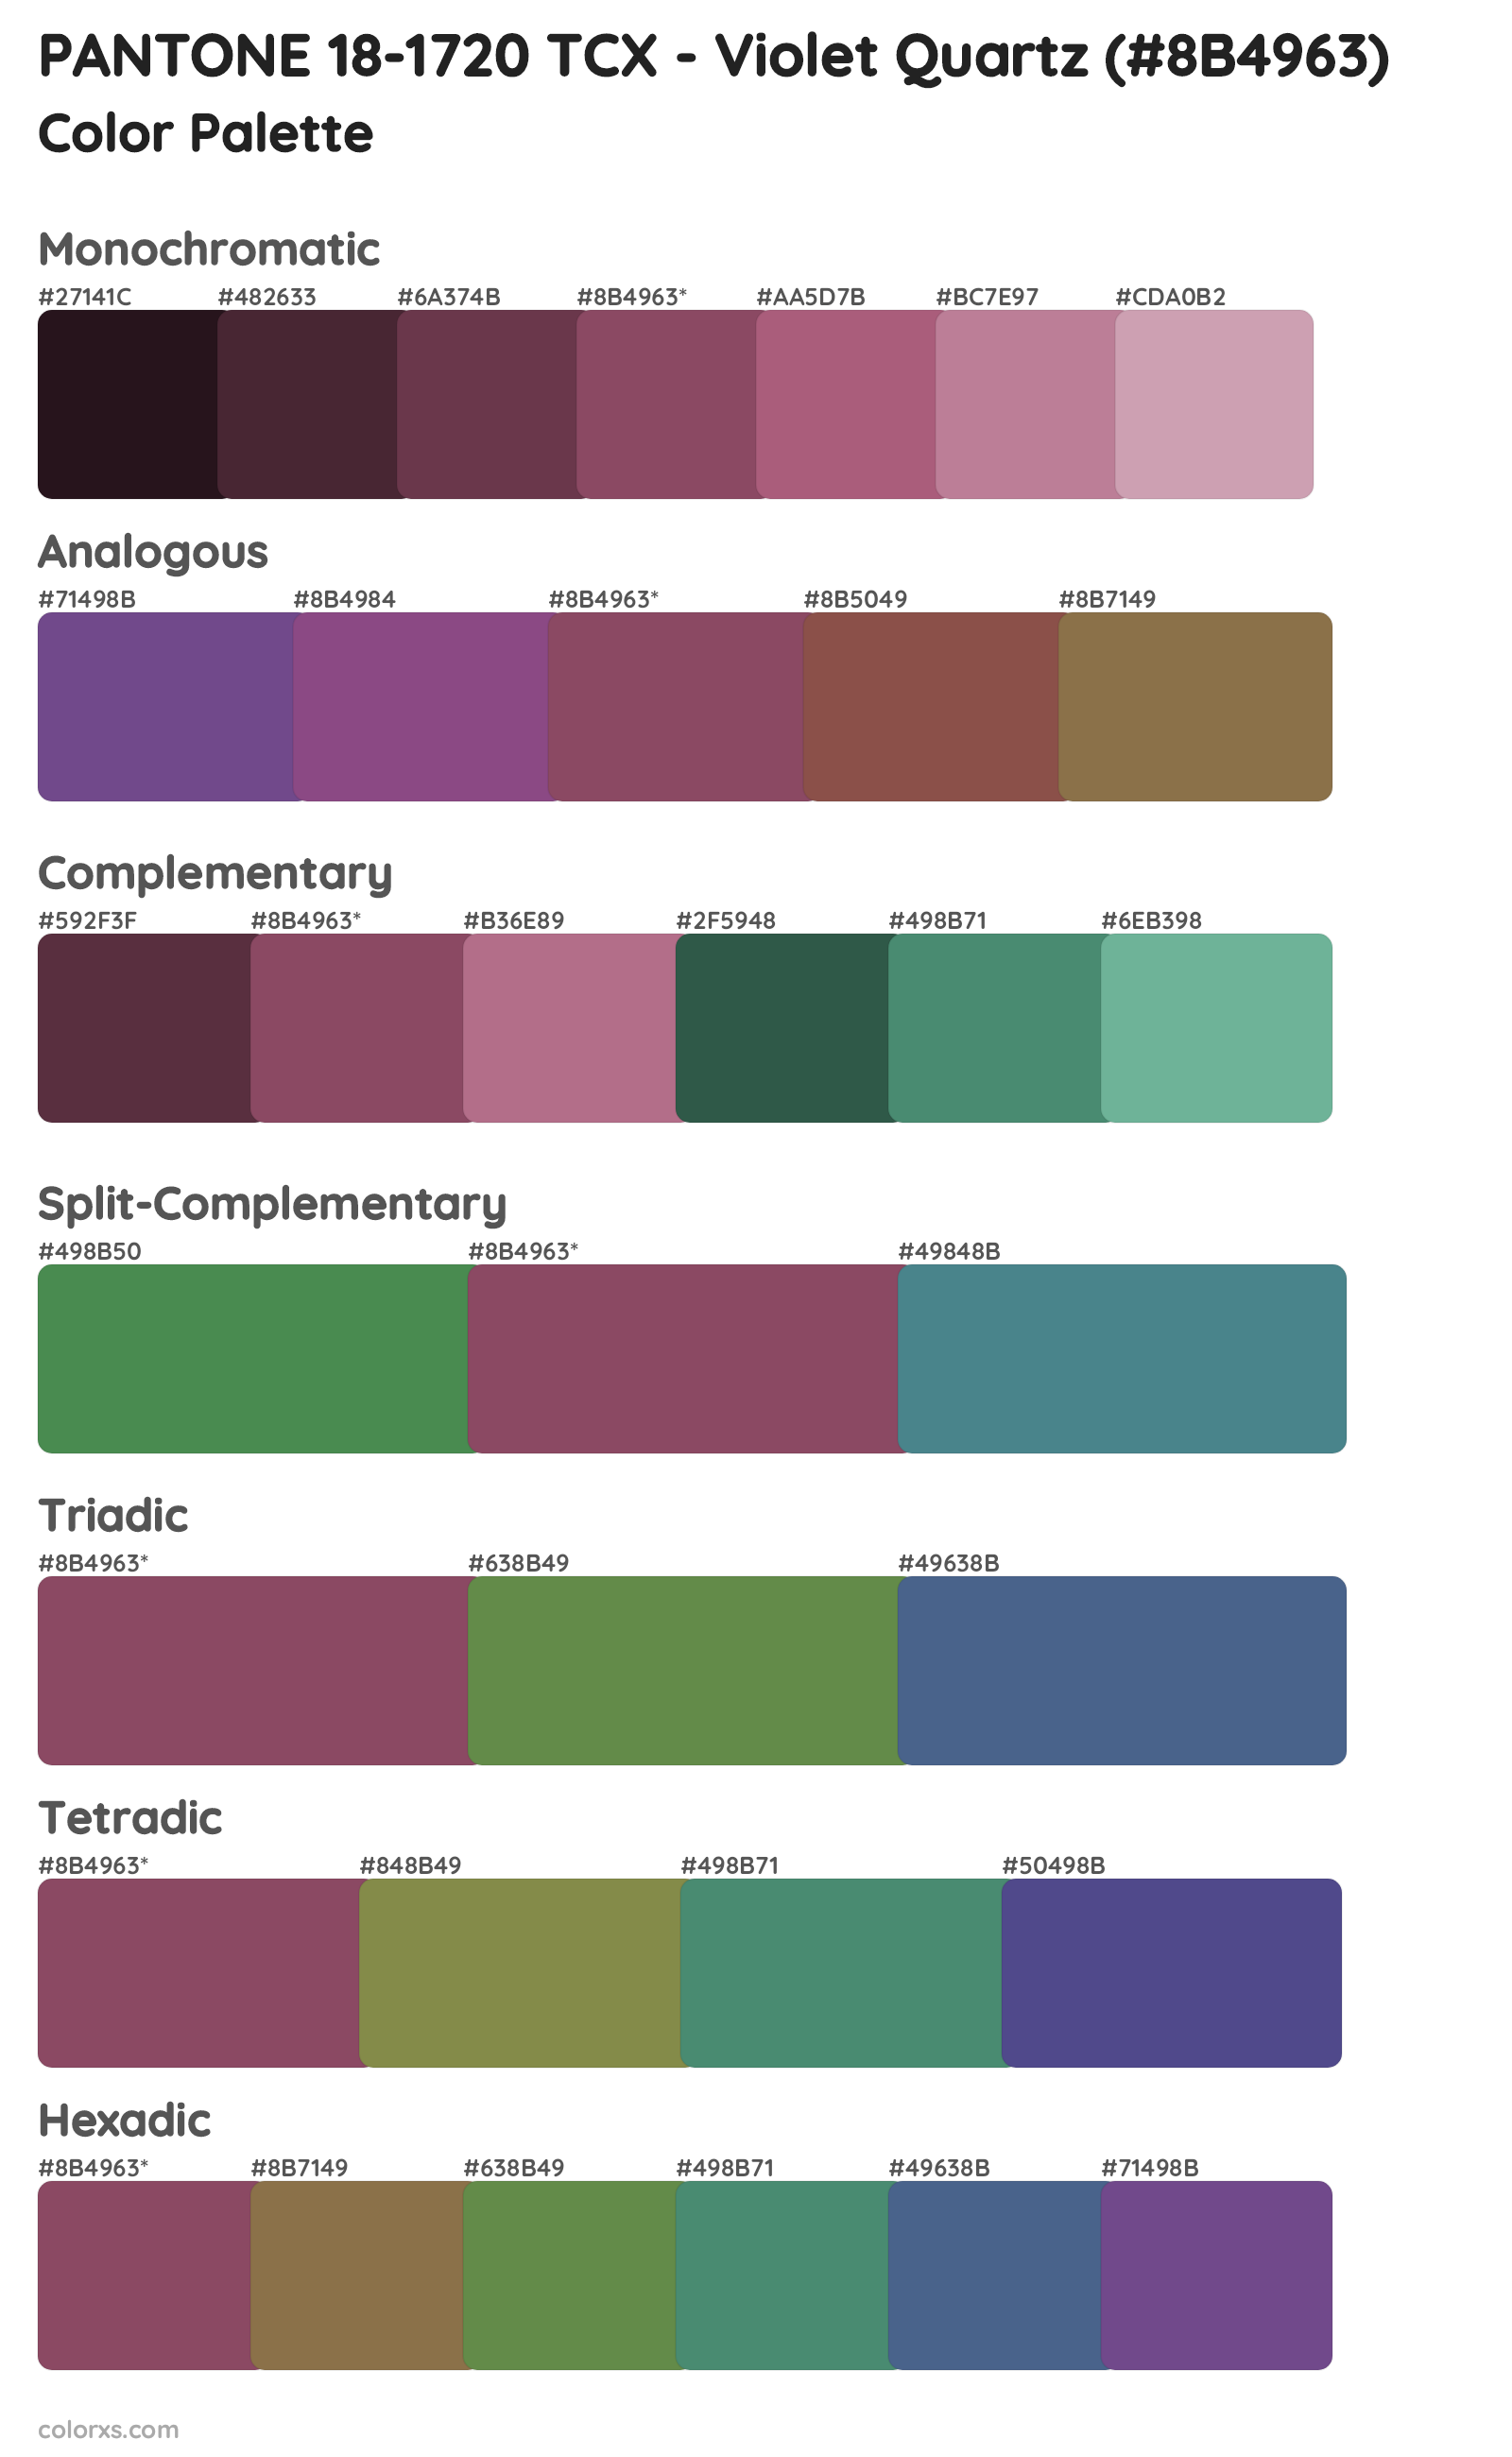 PANTONE 18-1720 TCX - Violet Quartz Color Scheme Palettes